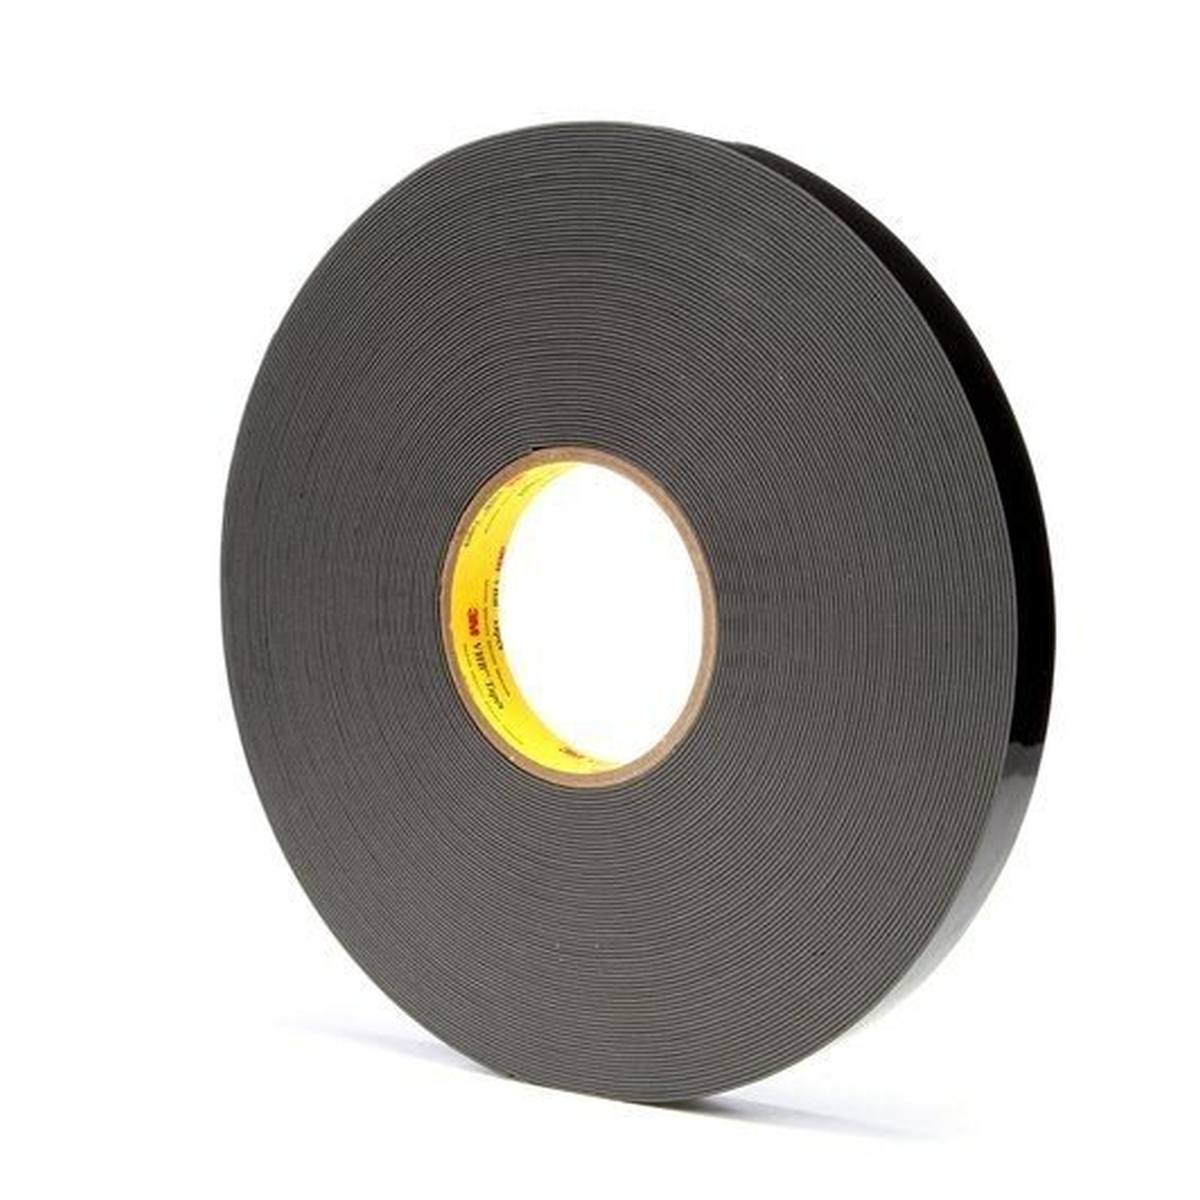 3M VHB adhesive tape 4929F, black, 12 mm x 33 m, 0.6 mm